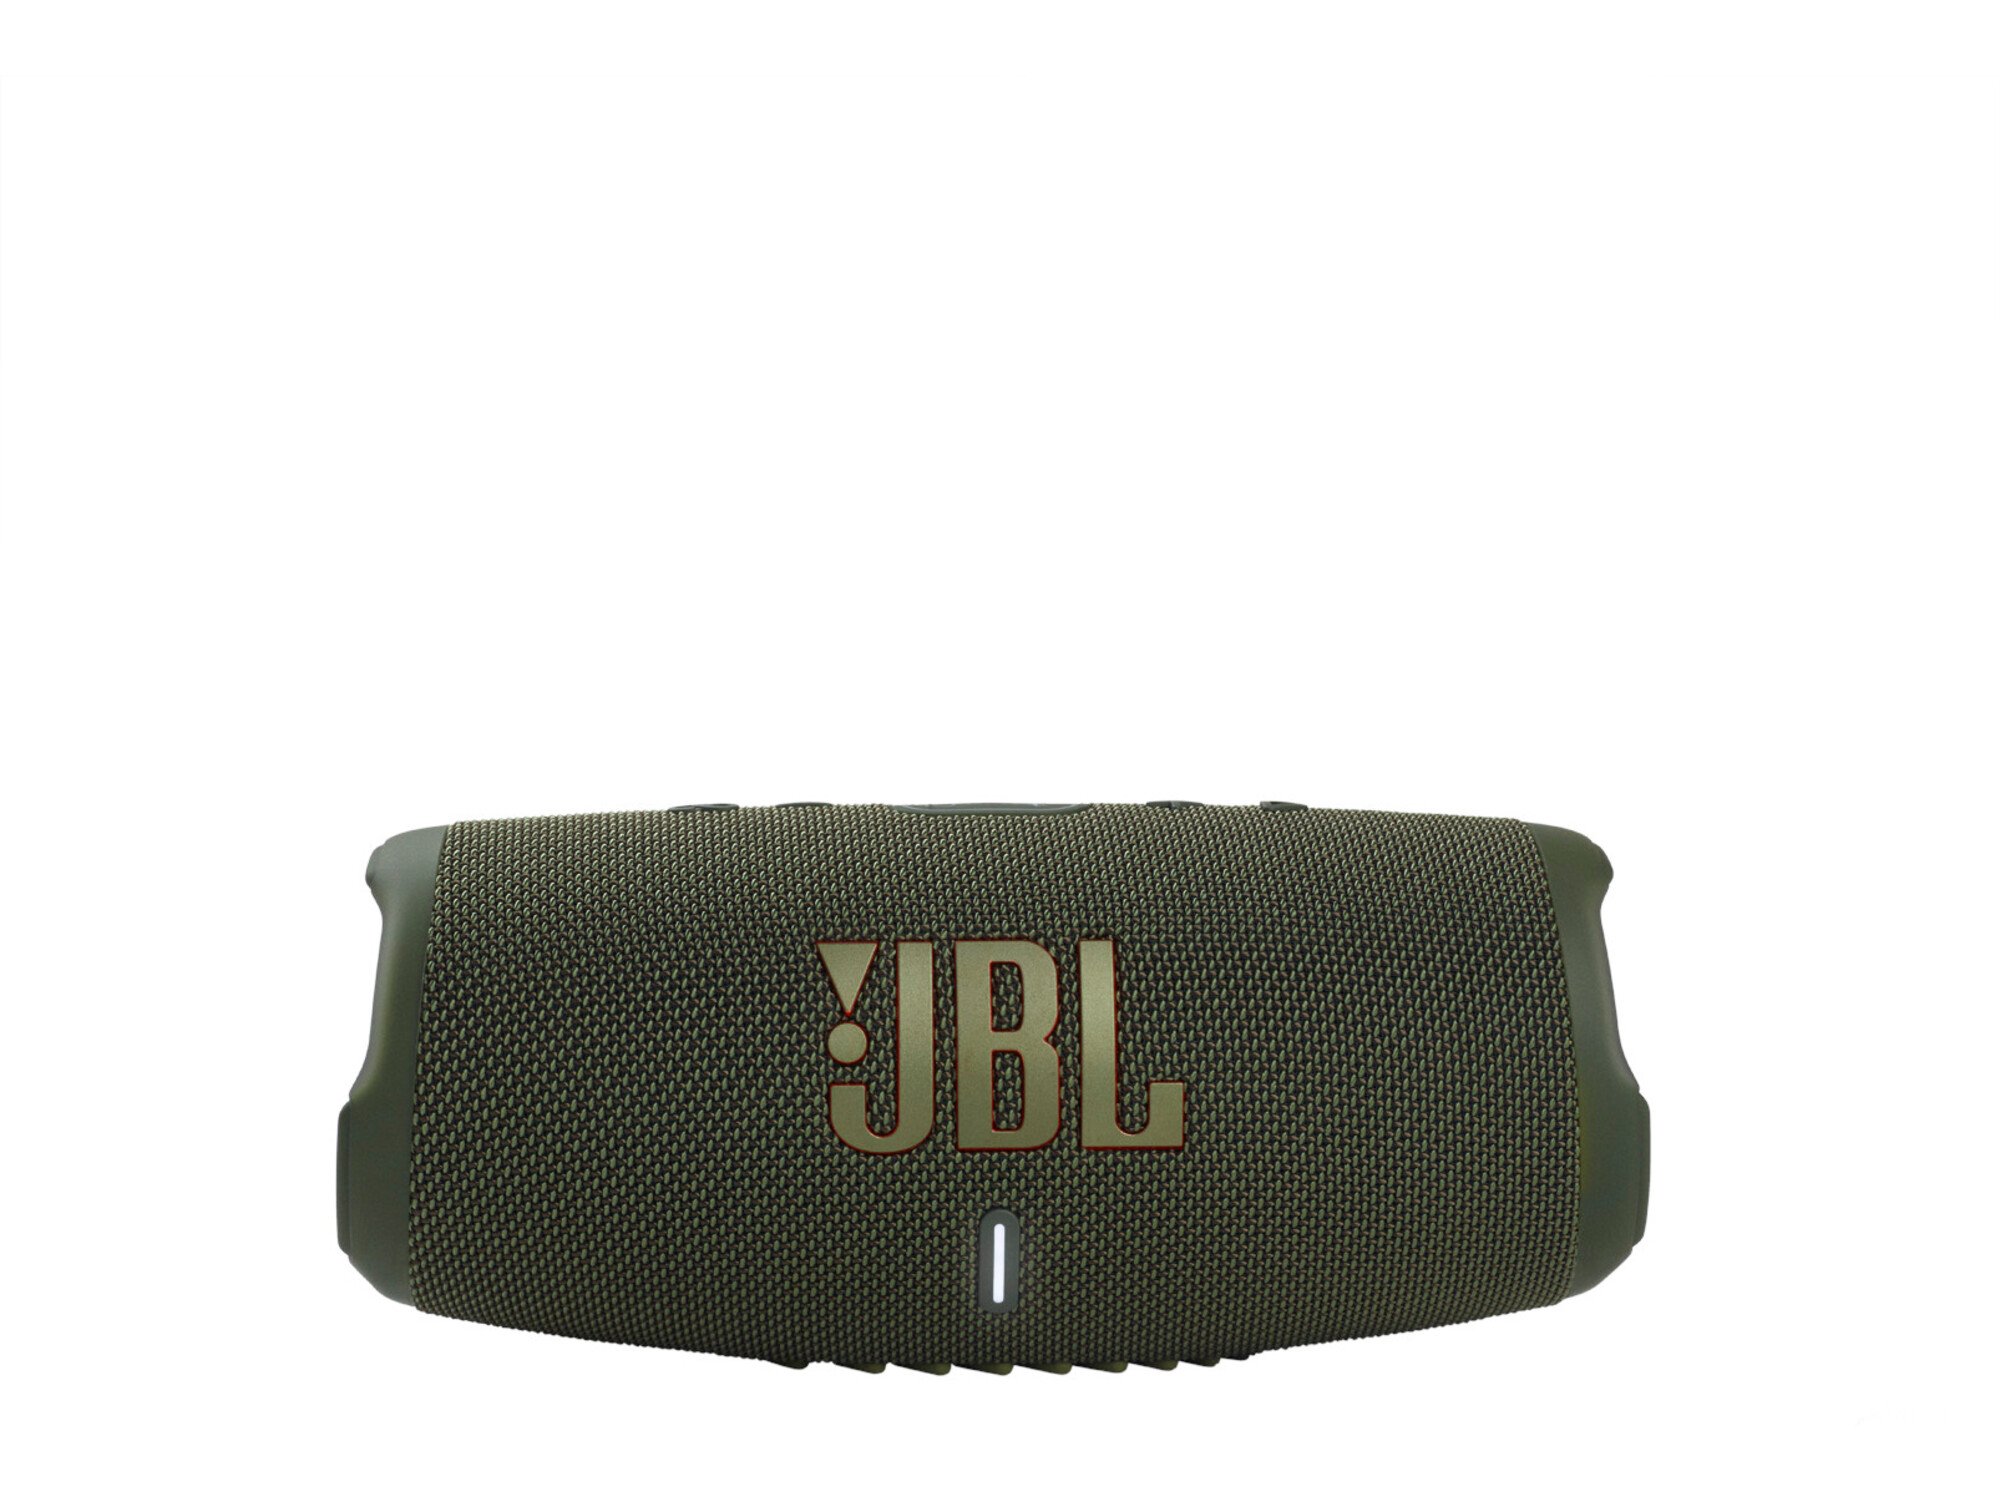 JBL Charge 5 originalni prenosni bluetooth zvočnik - olivno zelen